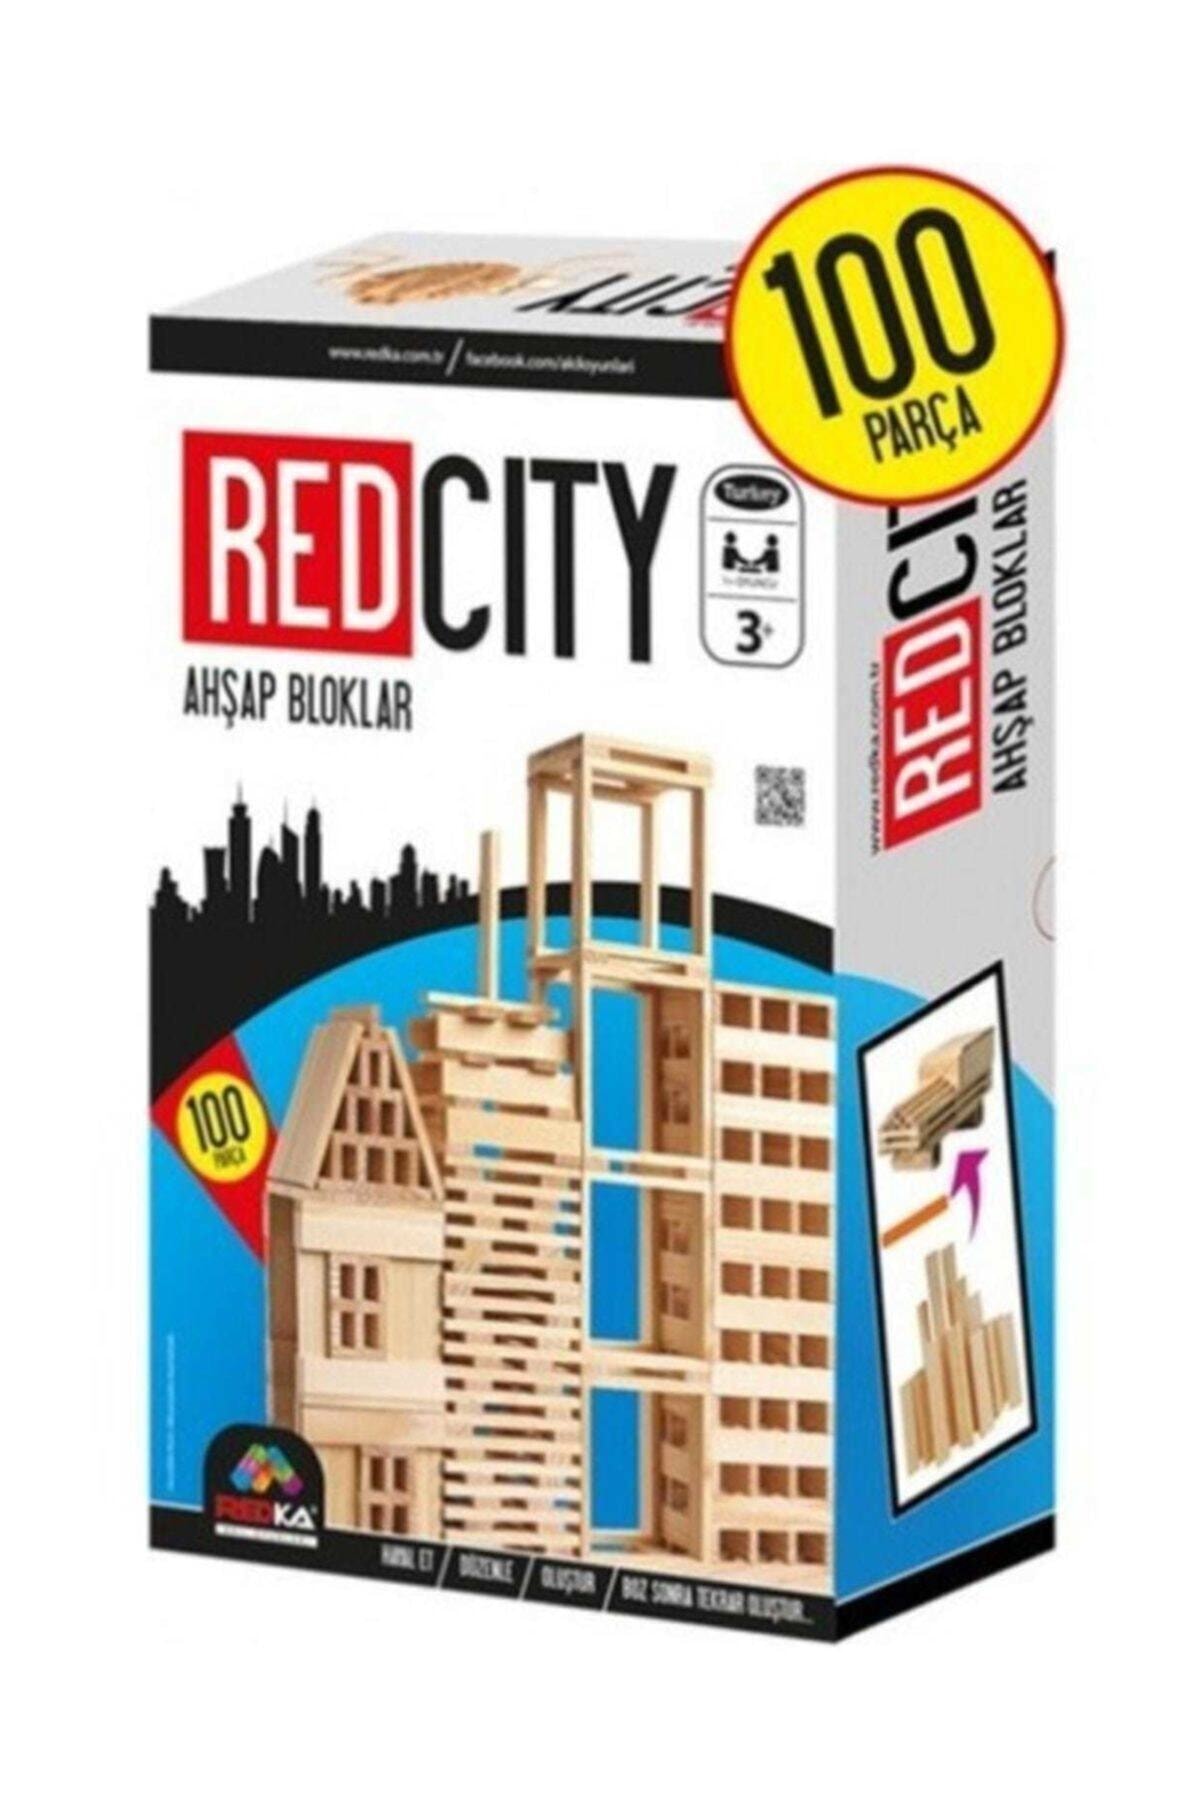 Redka/KumToys Redka Redcity Ahşap Bloklar Akıl Zeka Mantık Ve Strateji Oyunu